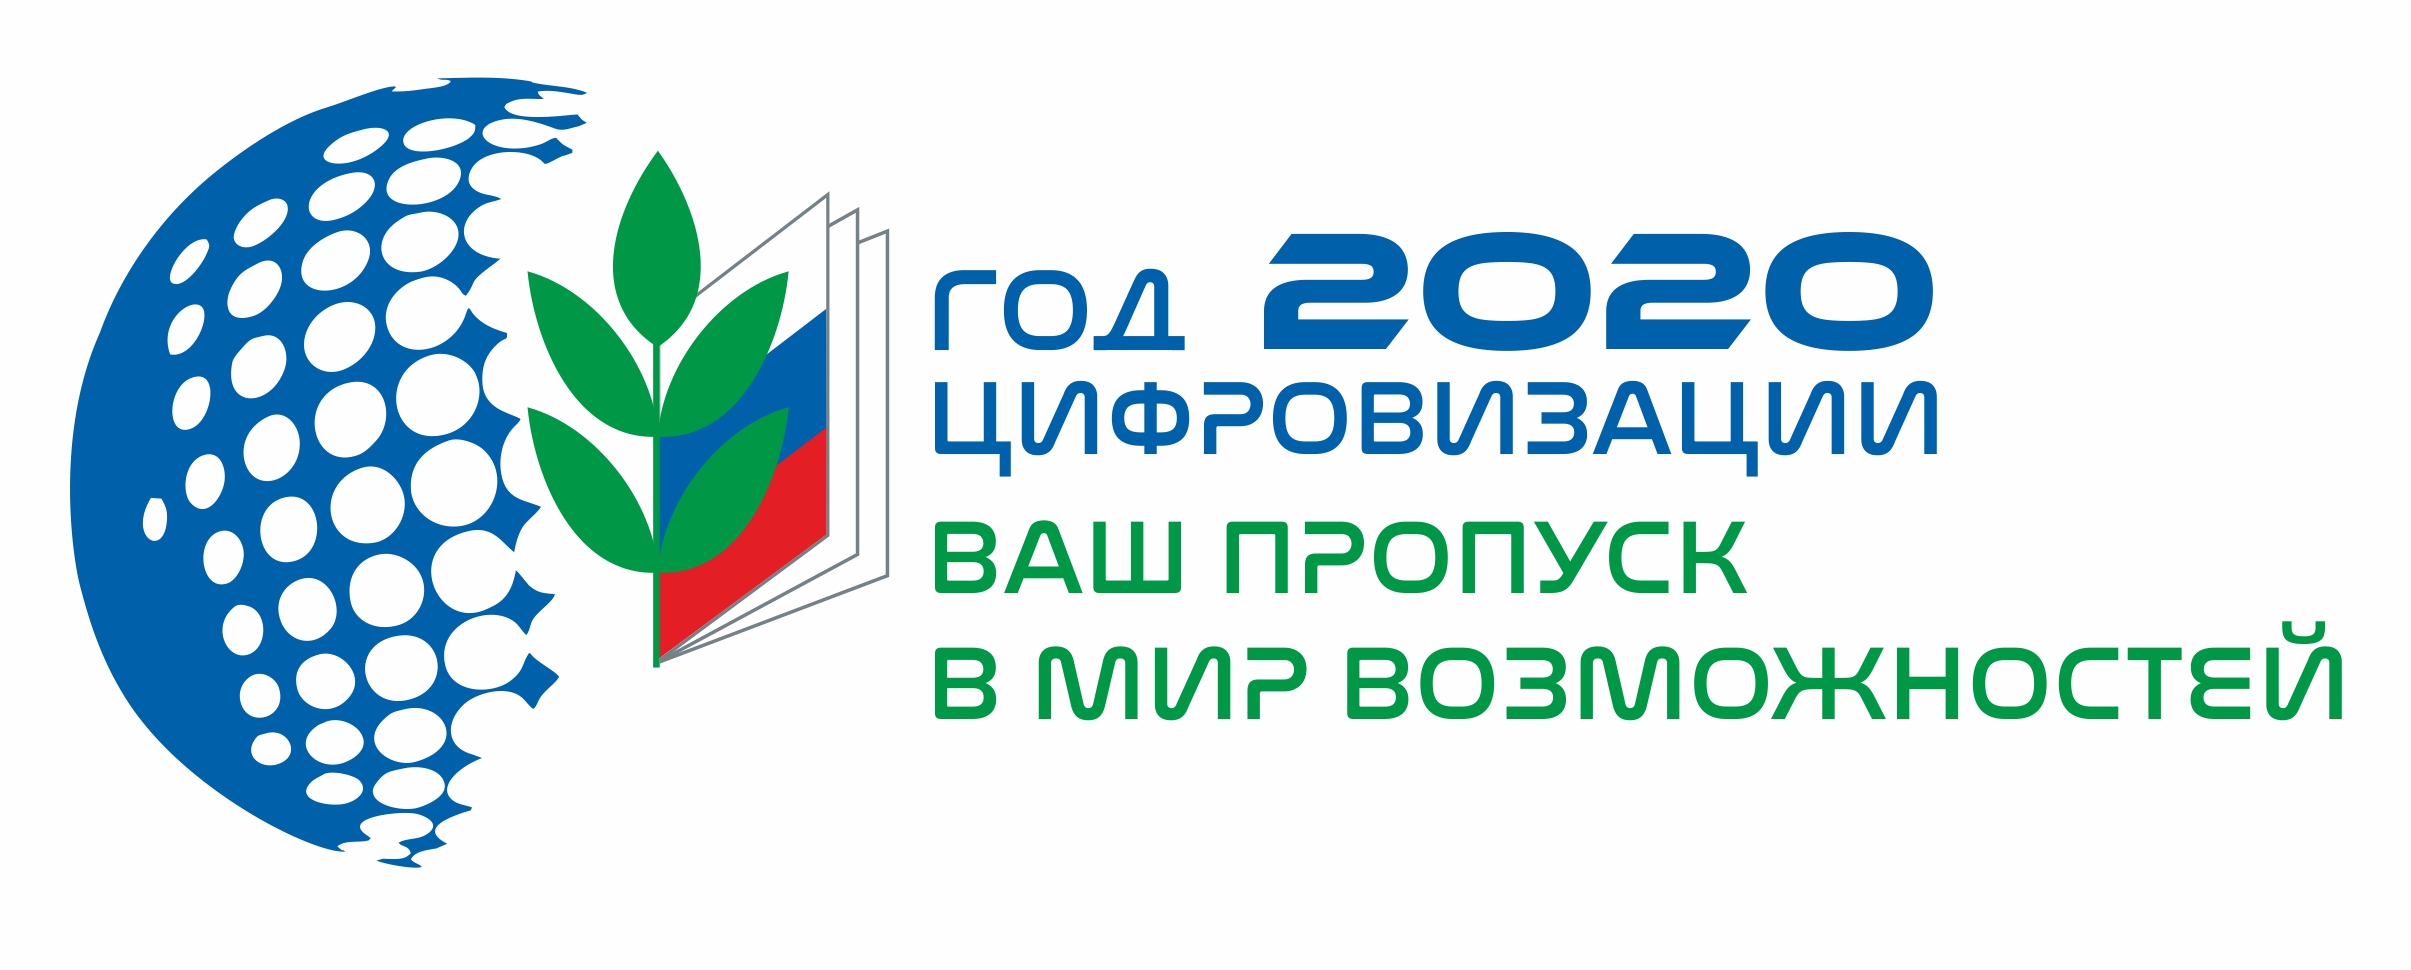 2020 год - Год цифровизации в Общероссийском Профсоюзе и 30-летия Общероссийского Профсоюза образования.